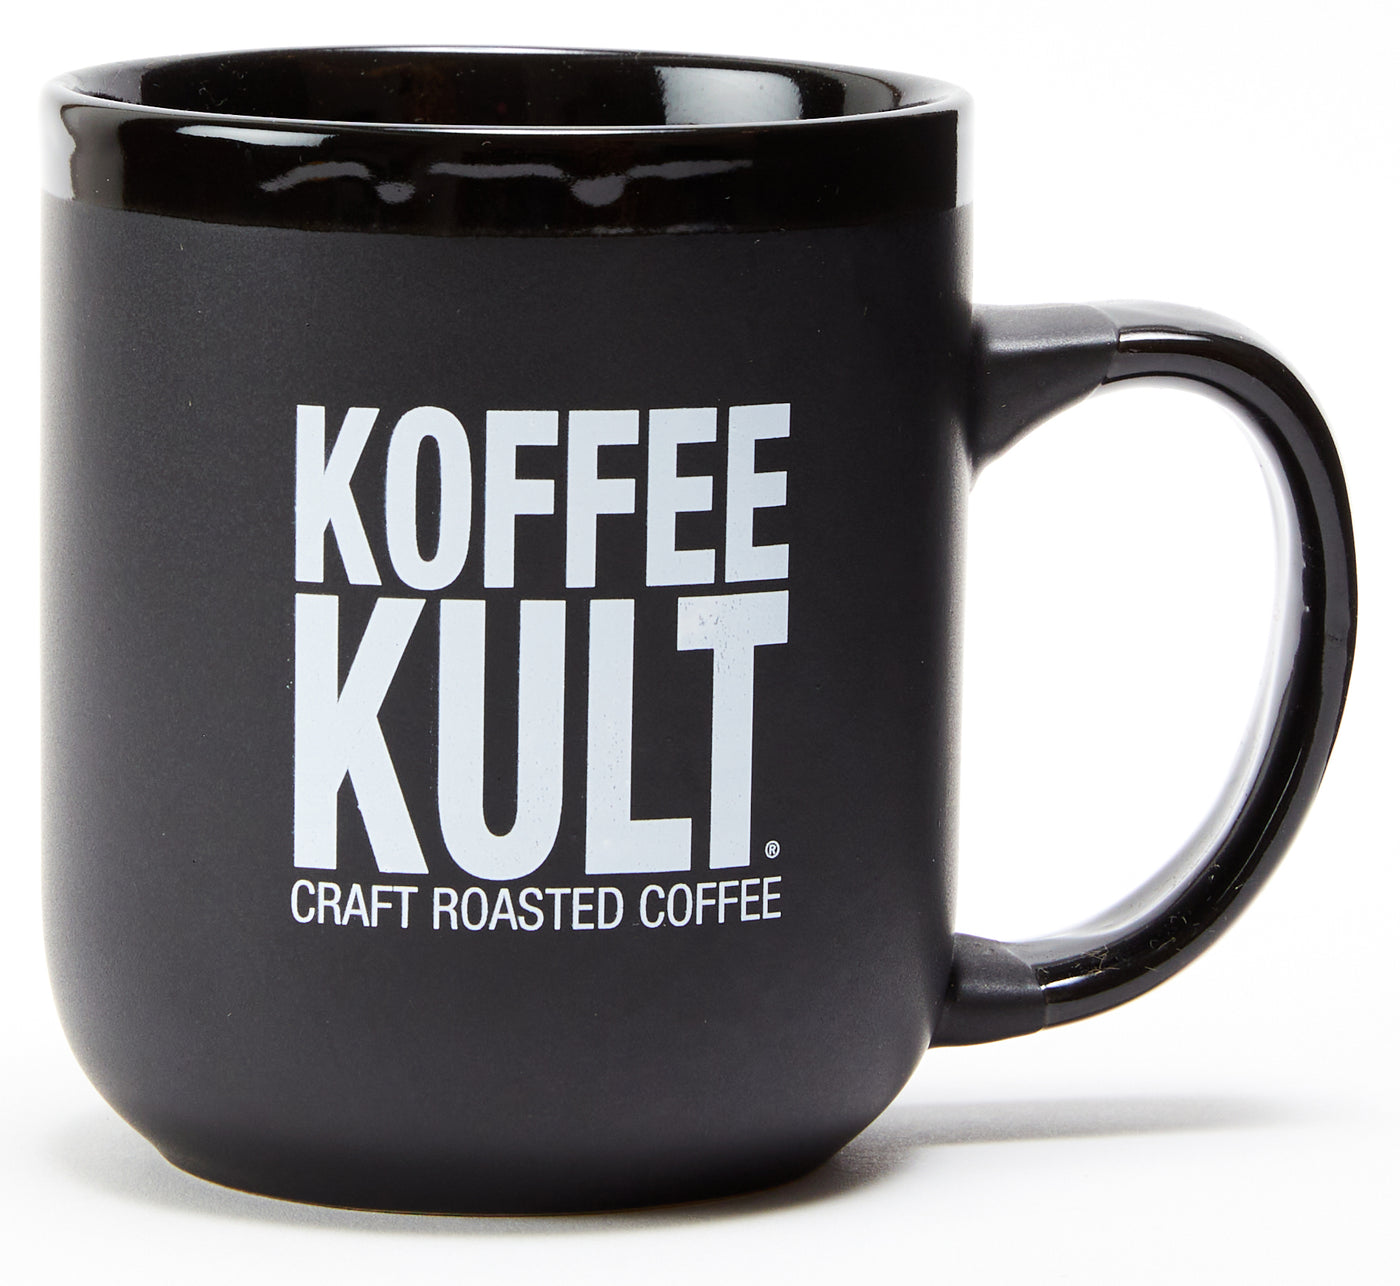 Koffee Kult Coffee Mug (black)